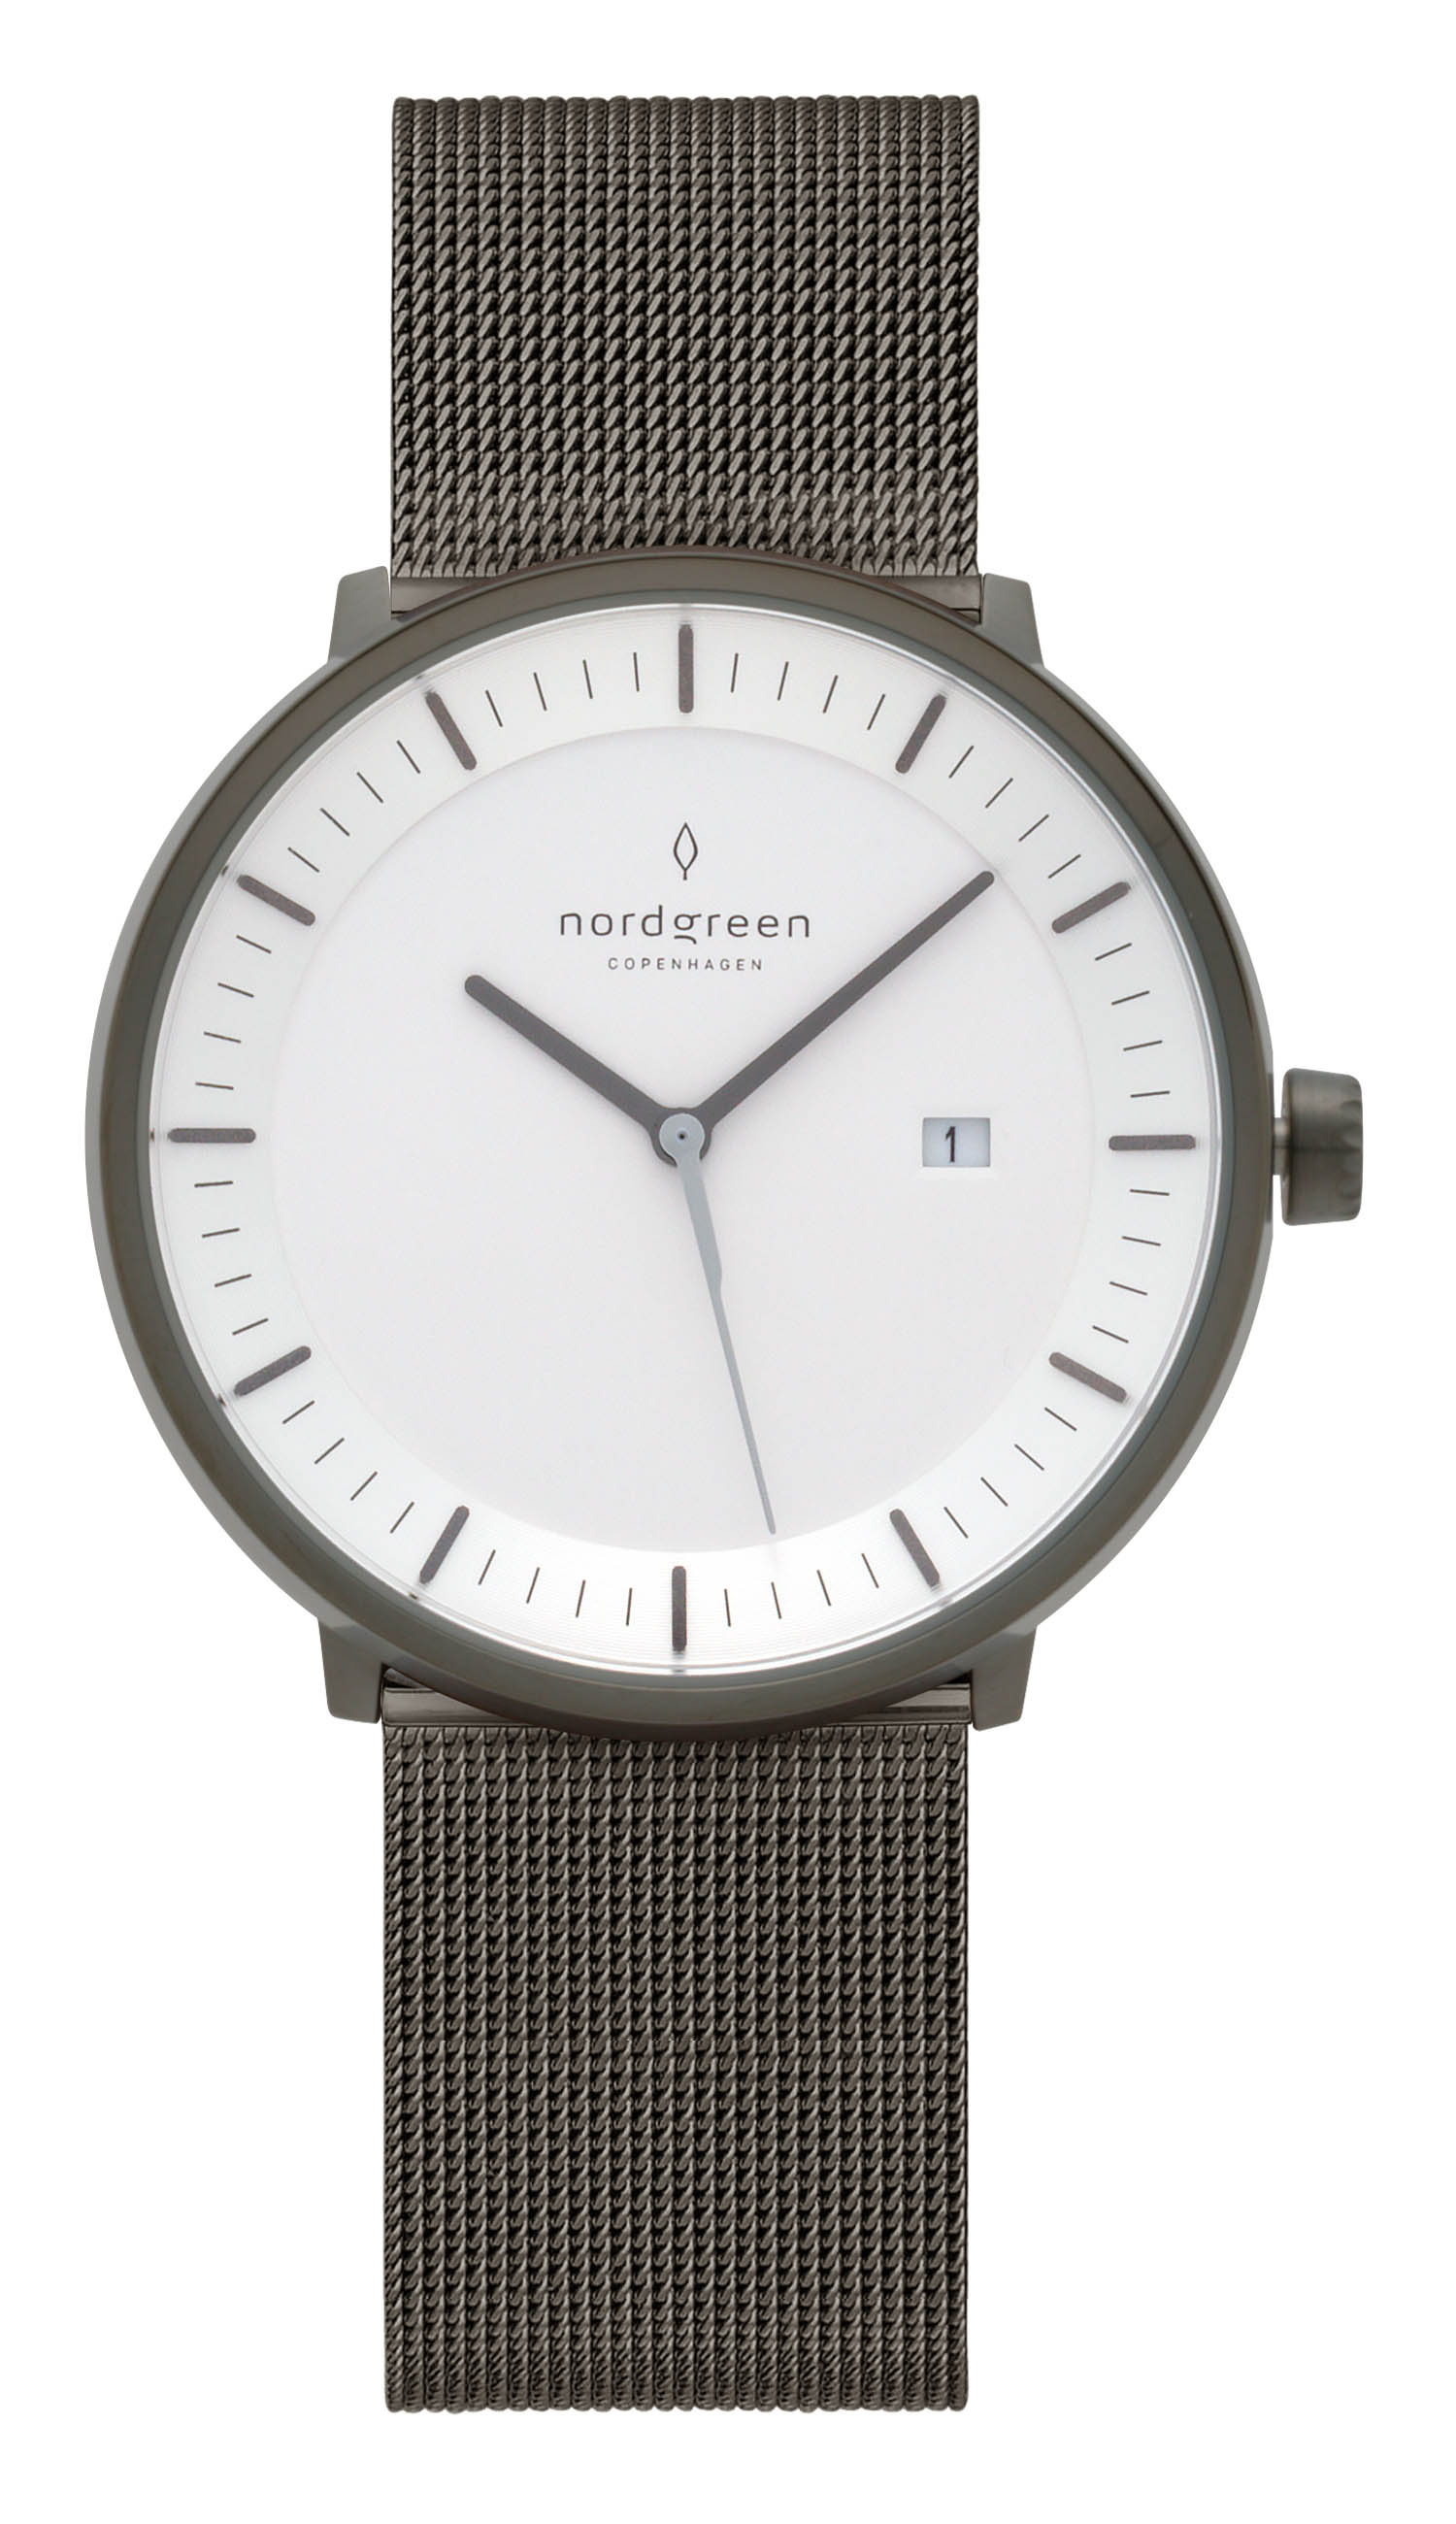 ノードグリーン nordgreen メンズ レディース 腕時計 フィロソファ Philosopher 40mm ホワイト フェイス レザーベルト 北欧  デザイン ブランド